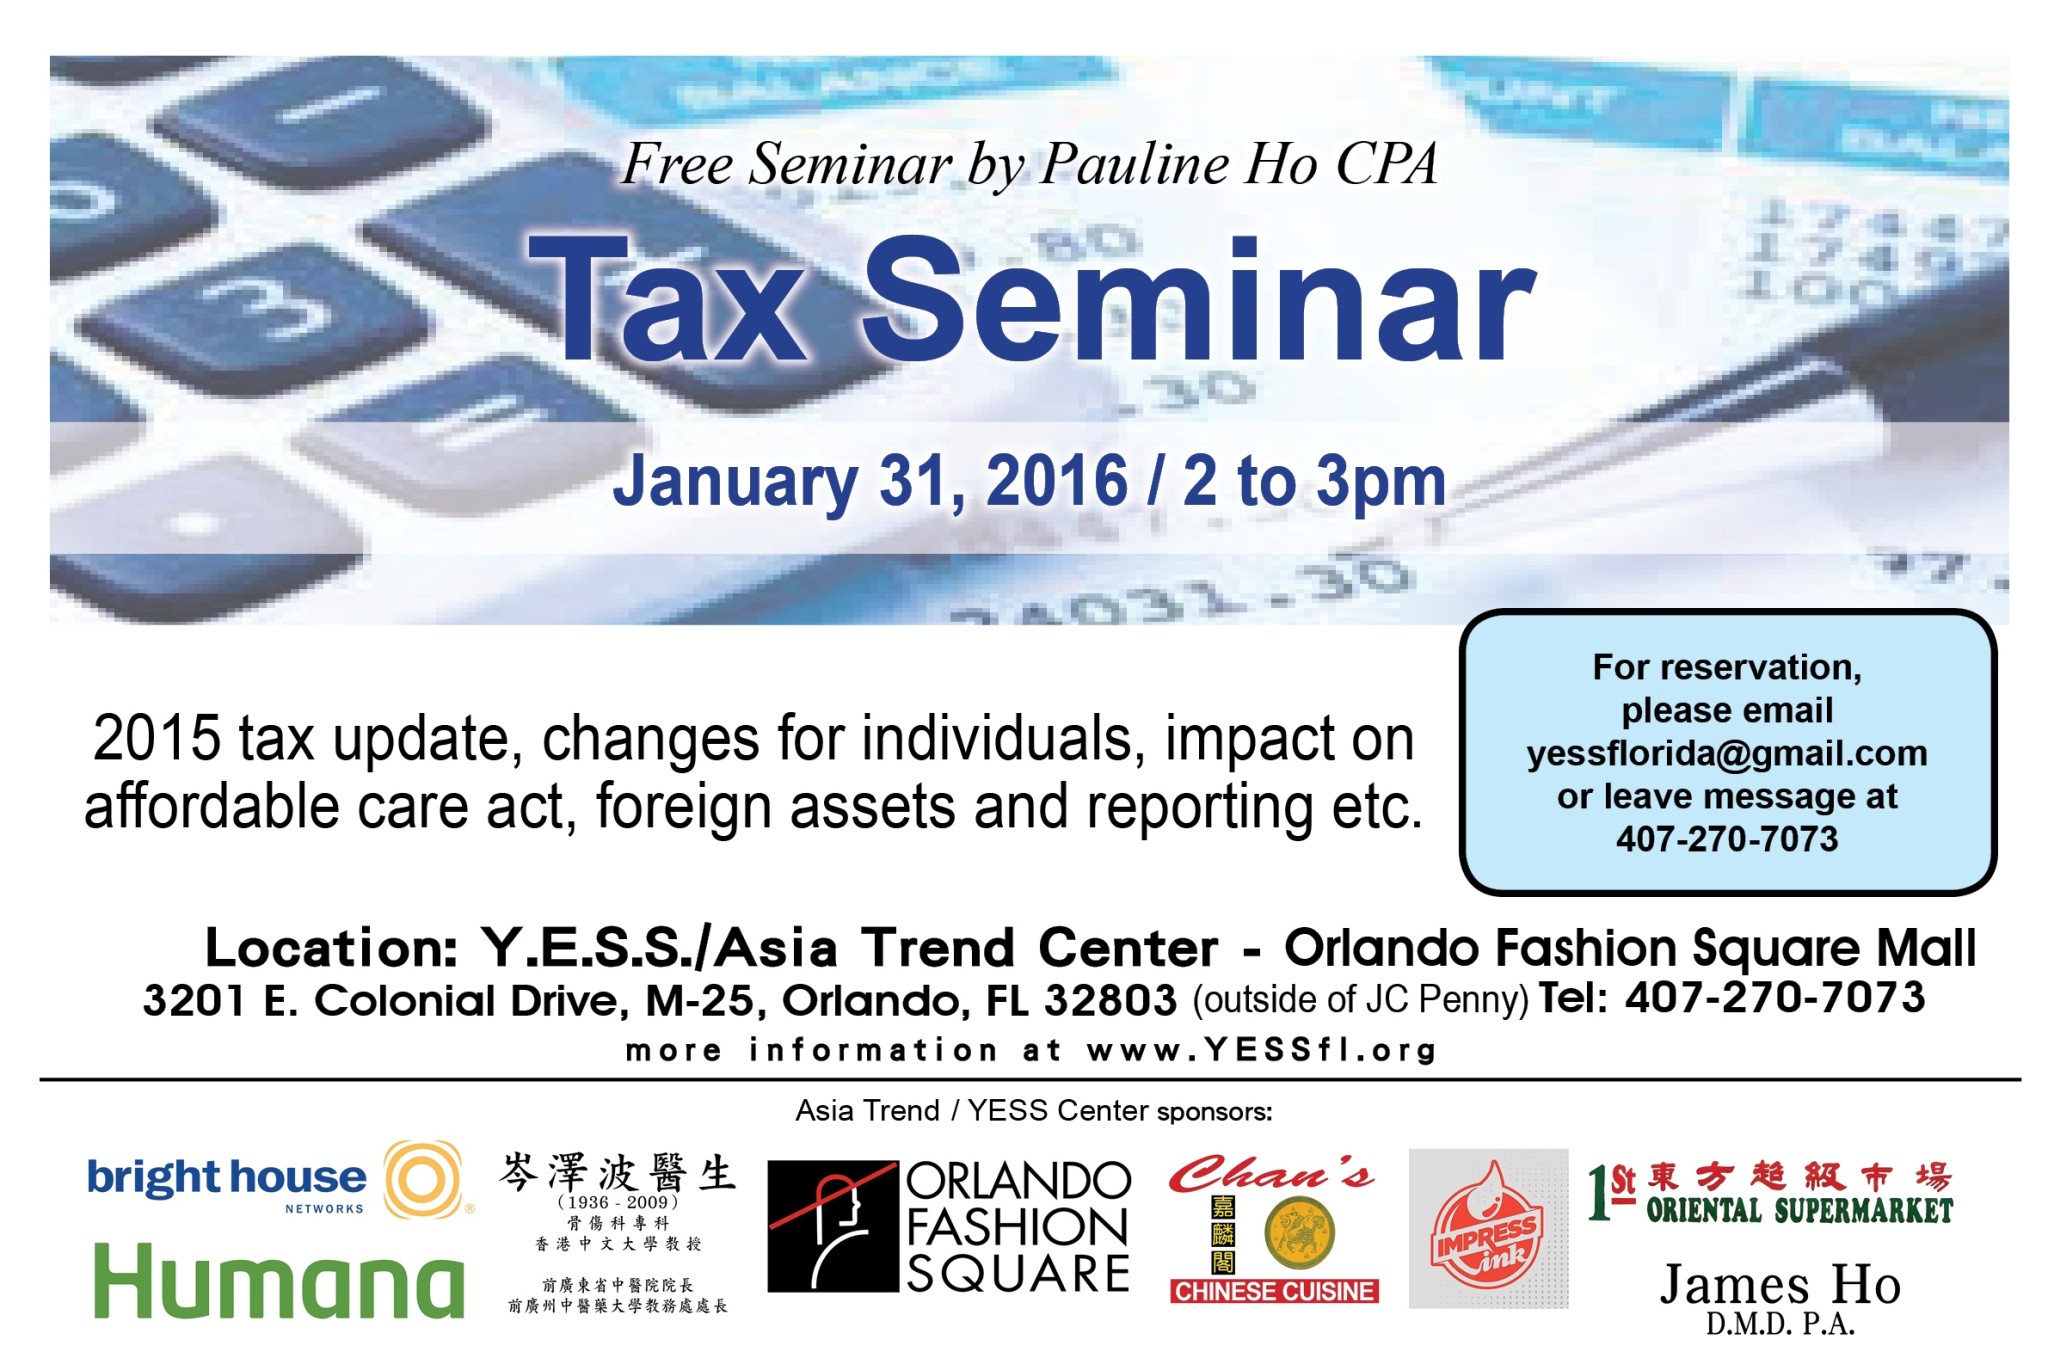 Free Seminar by Pauline Ho CPA - Tax Seminar